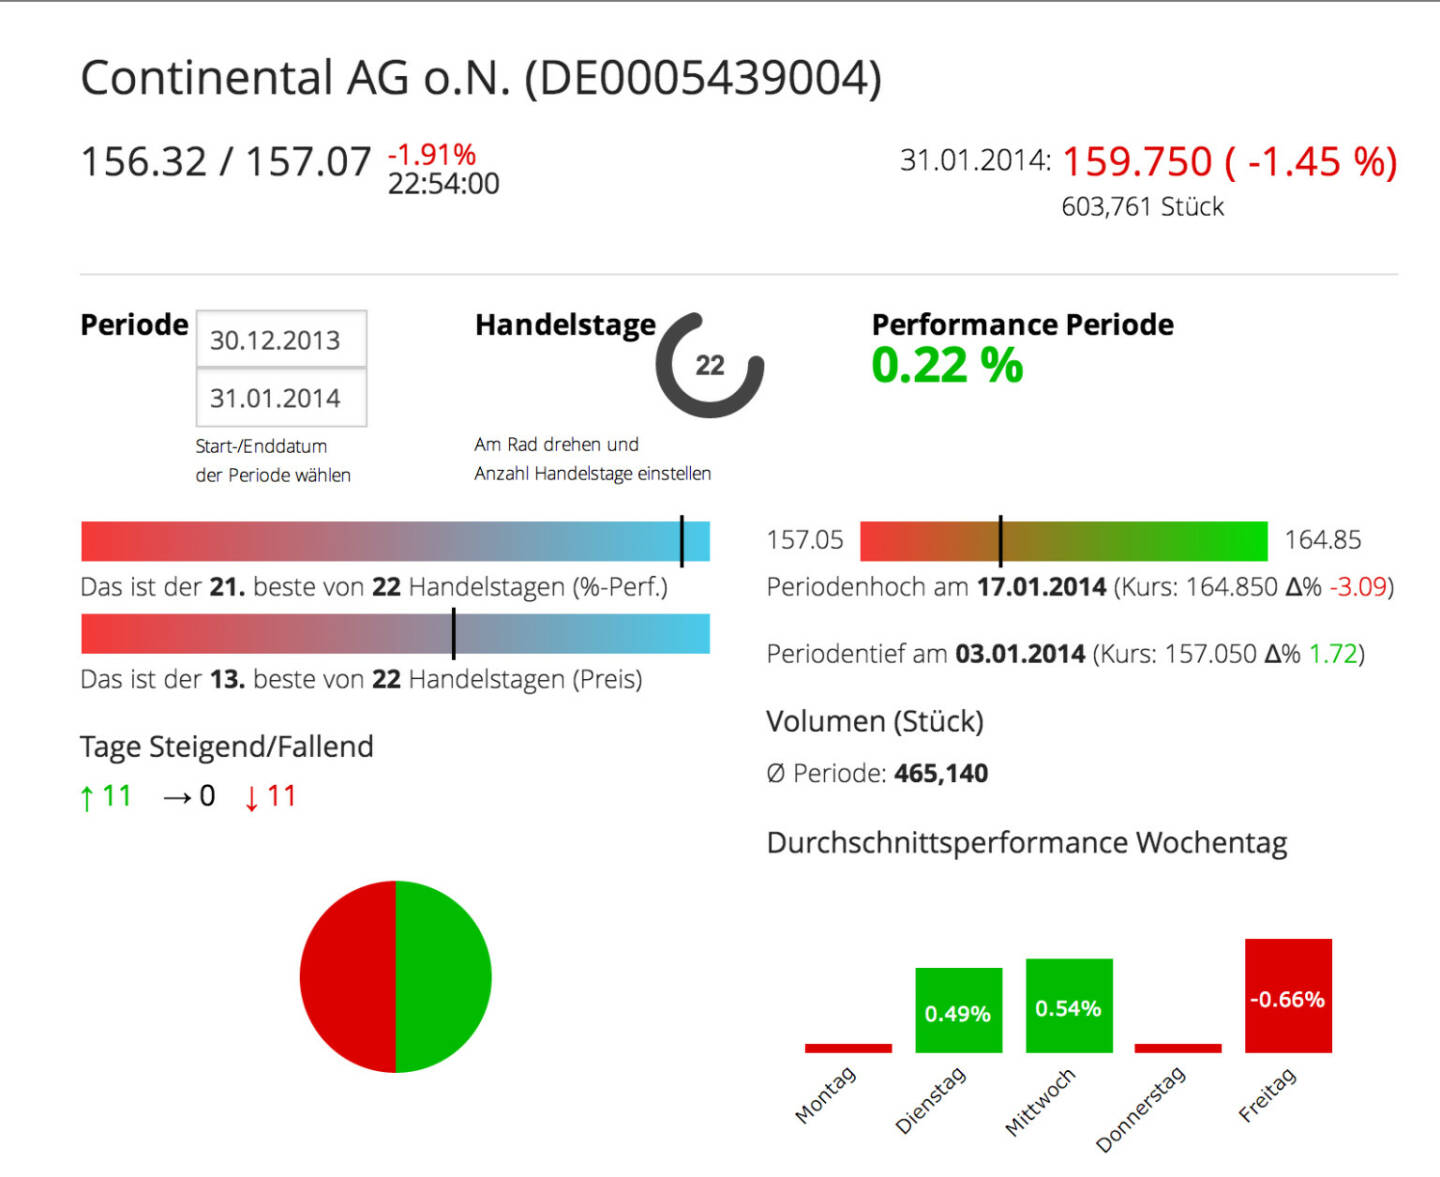 Die Continental AG im Börse Social Network, http://boerse-social.com/launch/aktie/continental_ag_on